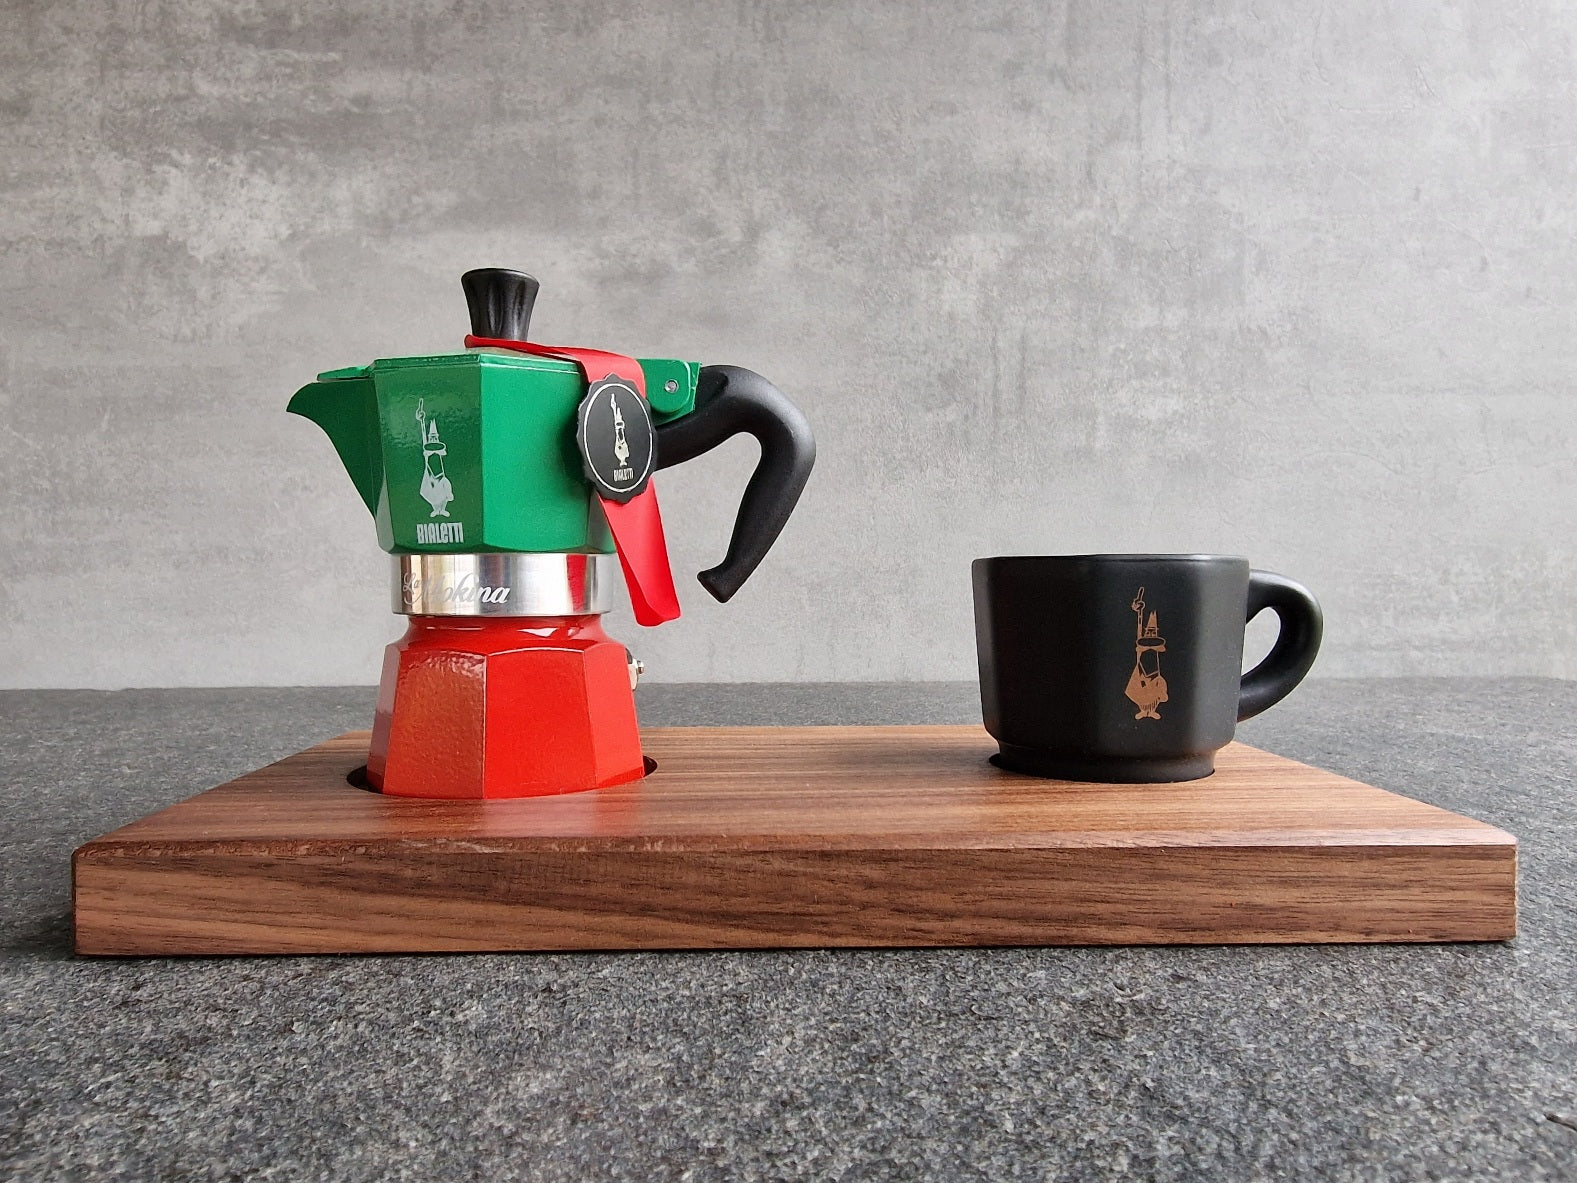 Set: Bialetti Espressokocher und eine schwarz Bialetti Espressotasse auf einem Nussbaum-Holztablett